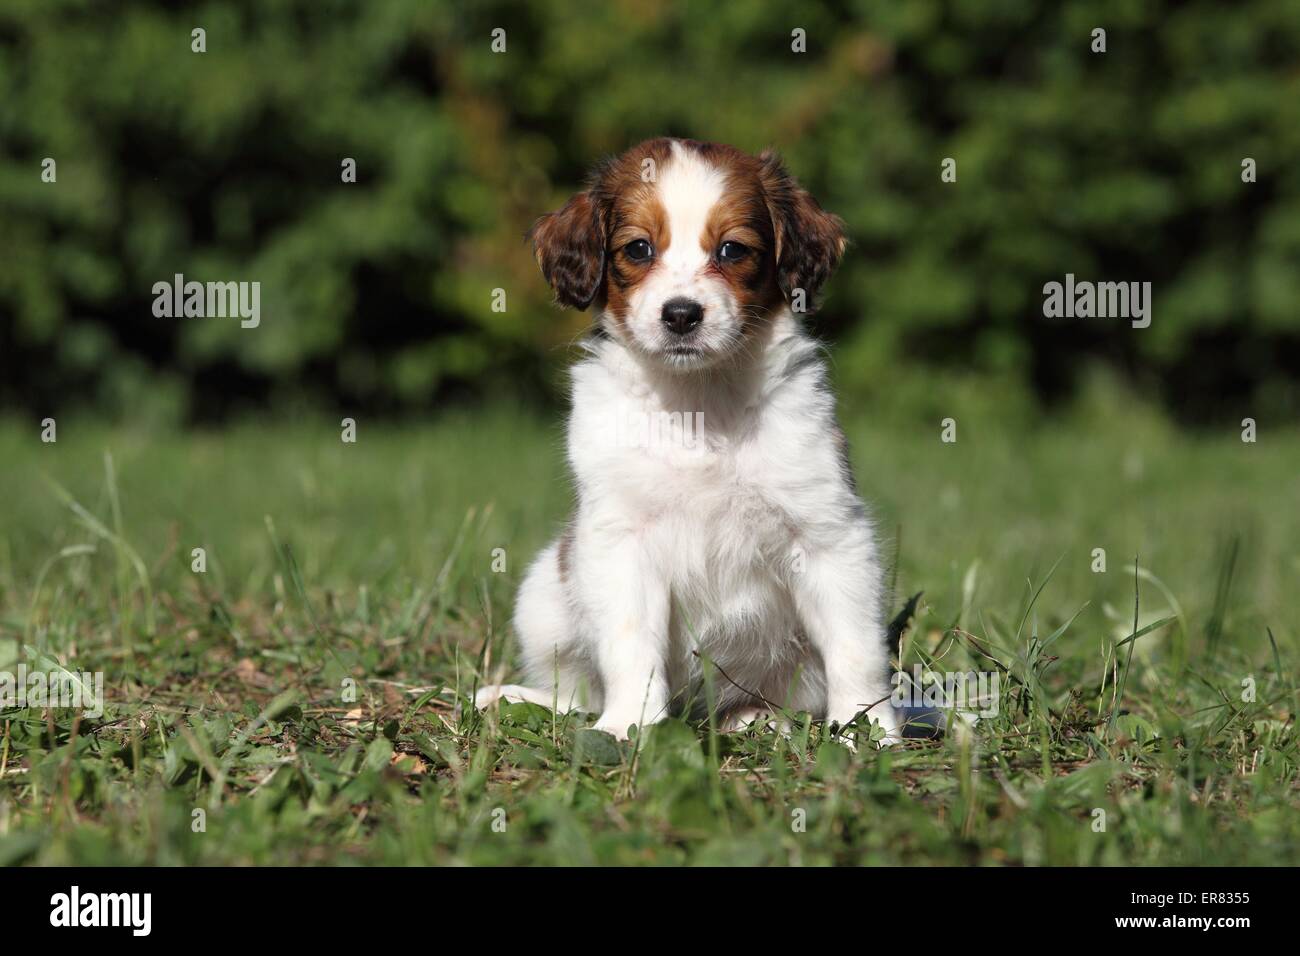 Kooikerhondje puppy Stock Photo